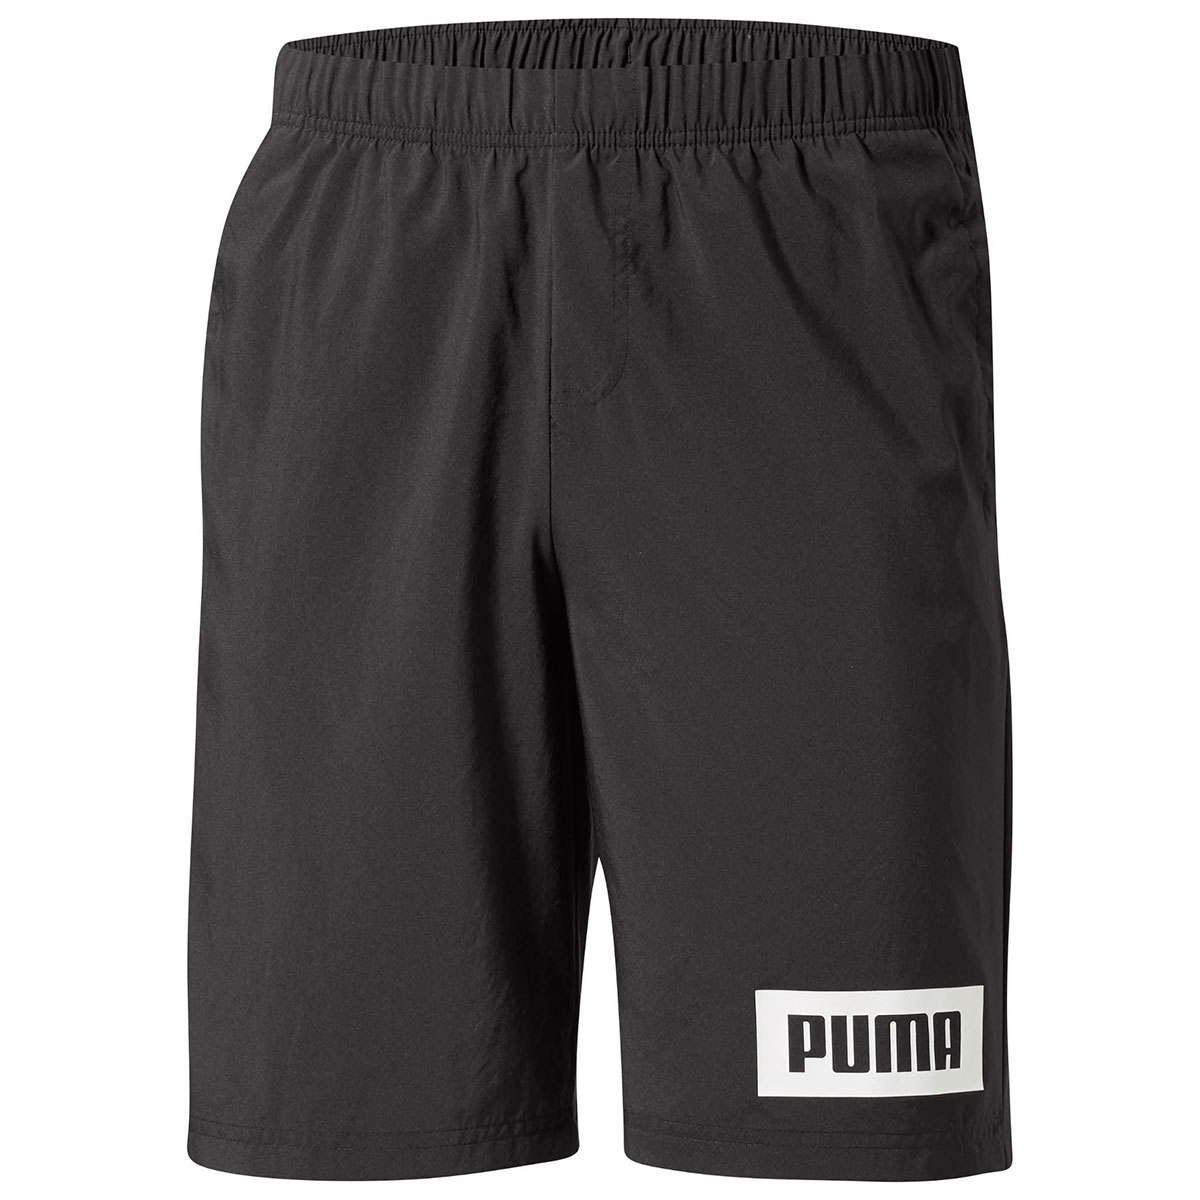 Puma Men's Rebel Woven Active Shorts - Black, L